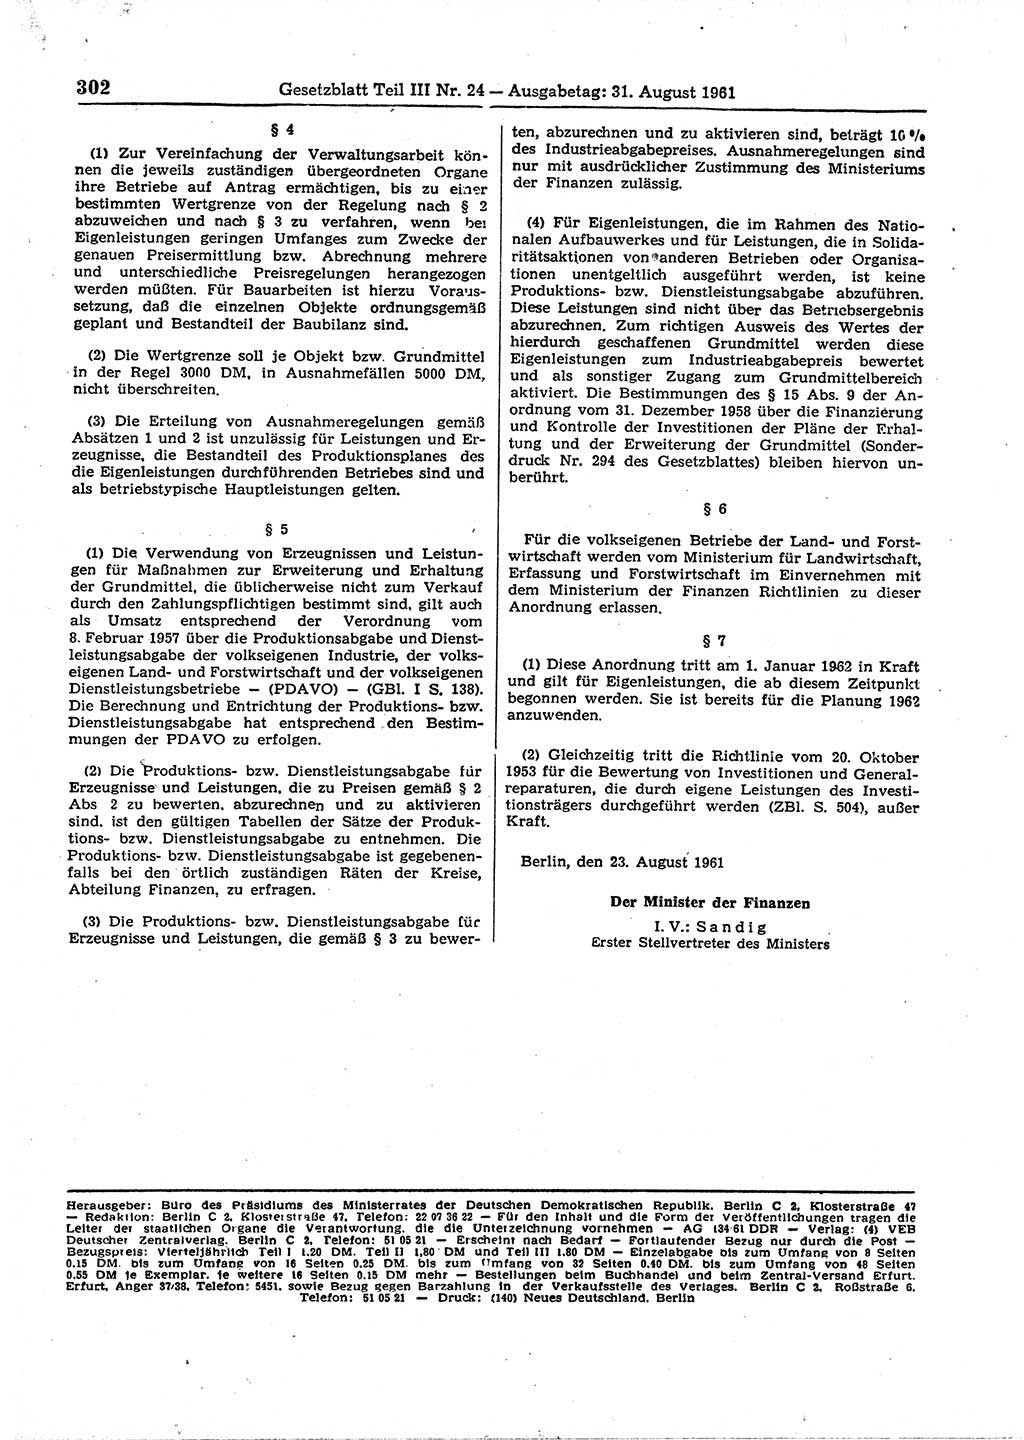 Gesetzblatt (GBl.) der Deutschen Demokratischen Republik (DDR) Teil ⅠⅠⅠ 1961, Seite 302 (GBl. DDR ⅠⅠⅠ 1961, S. 302)